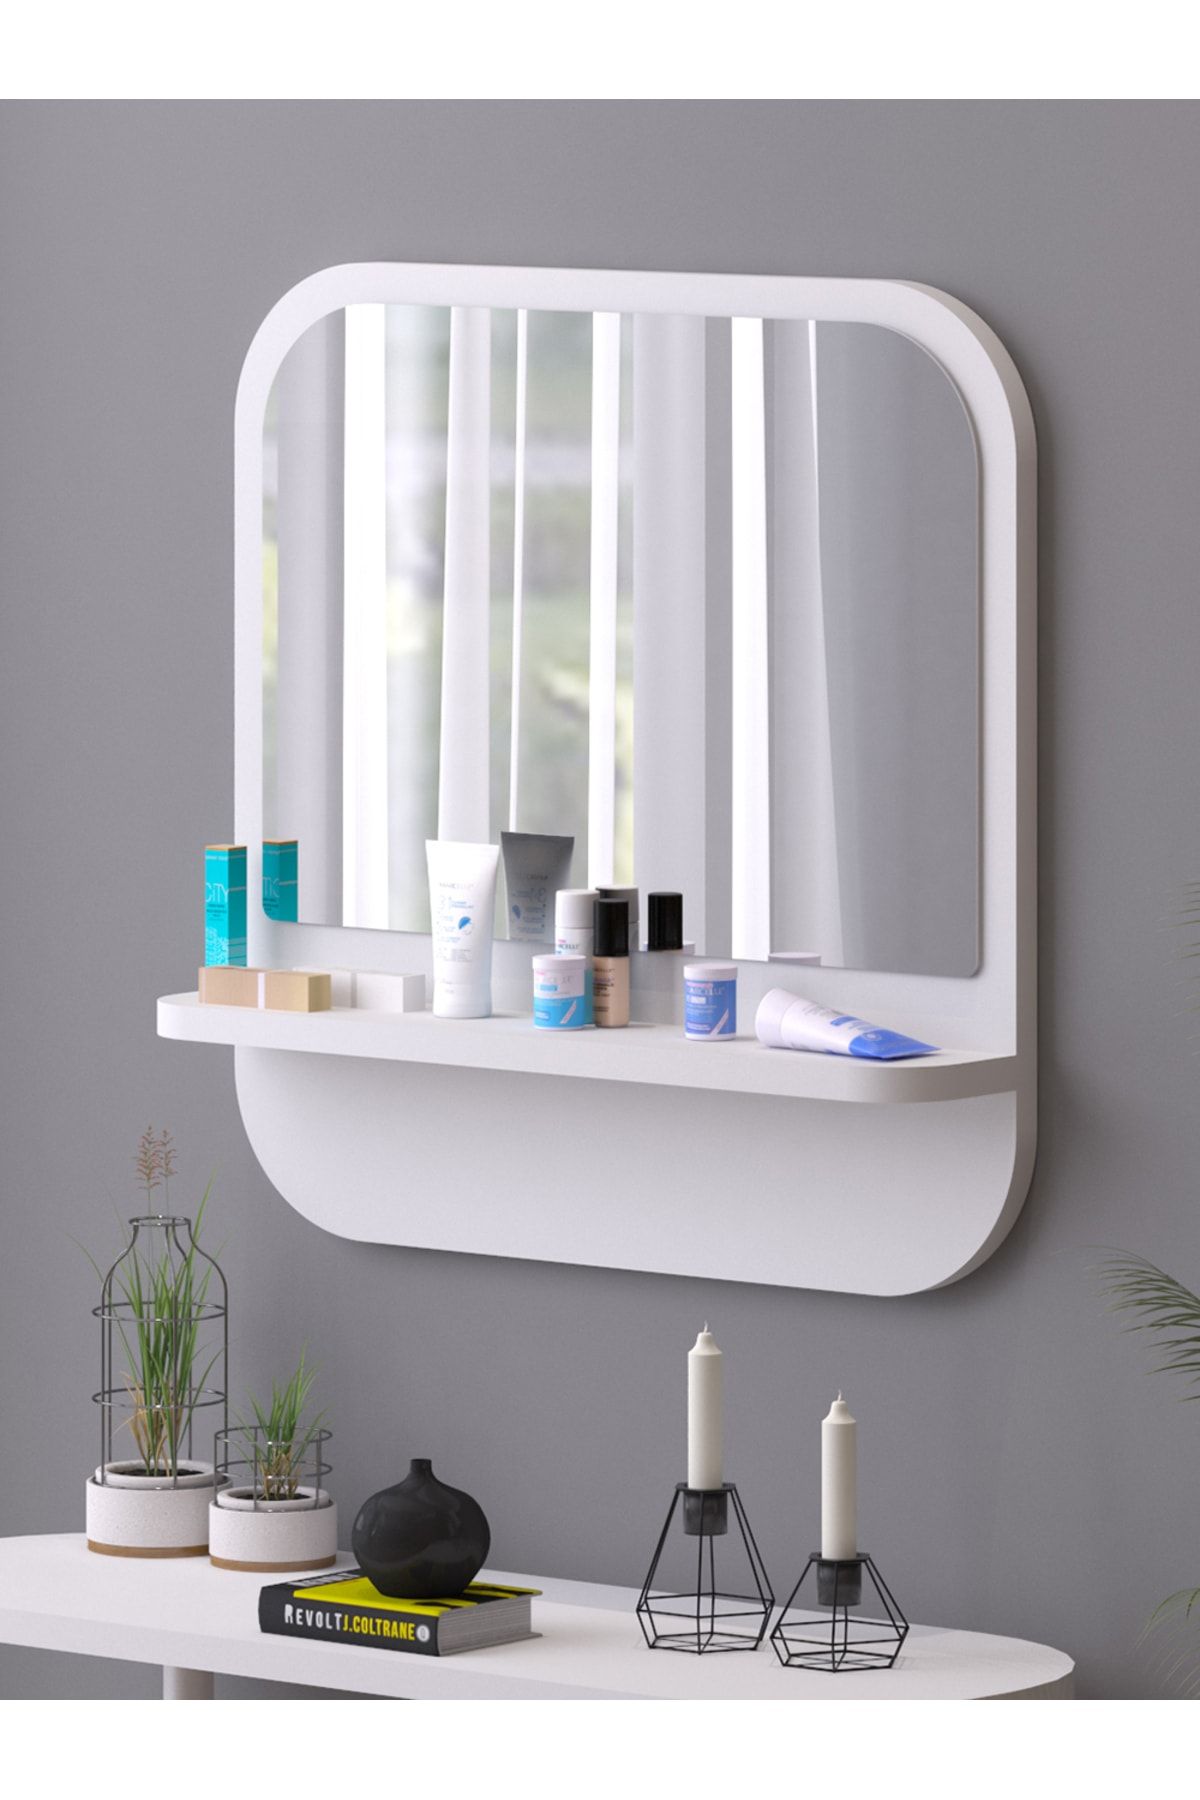 nysamo Raflı Kare 45 cm Koridor Dresuar Konsol Duvar Salon Banyo Ofis Çocuk Yatak Oda raflı Aynası